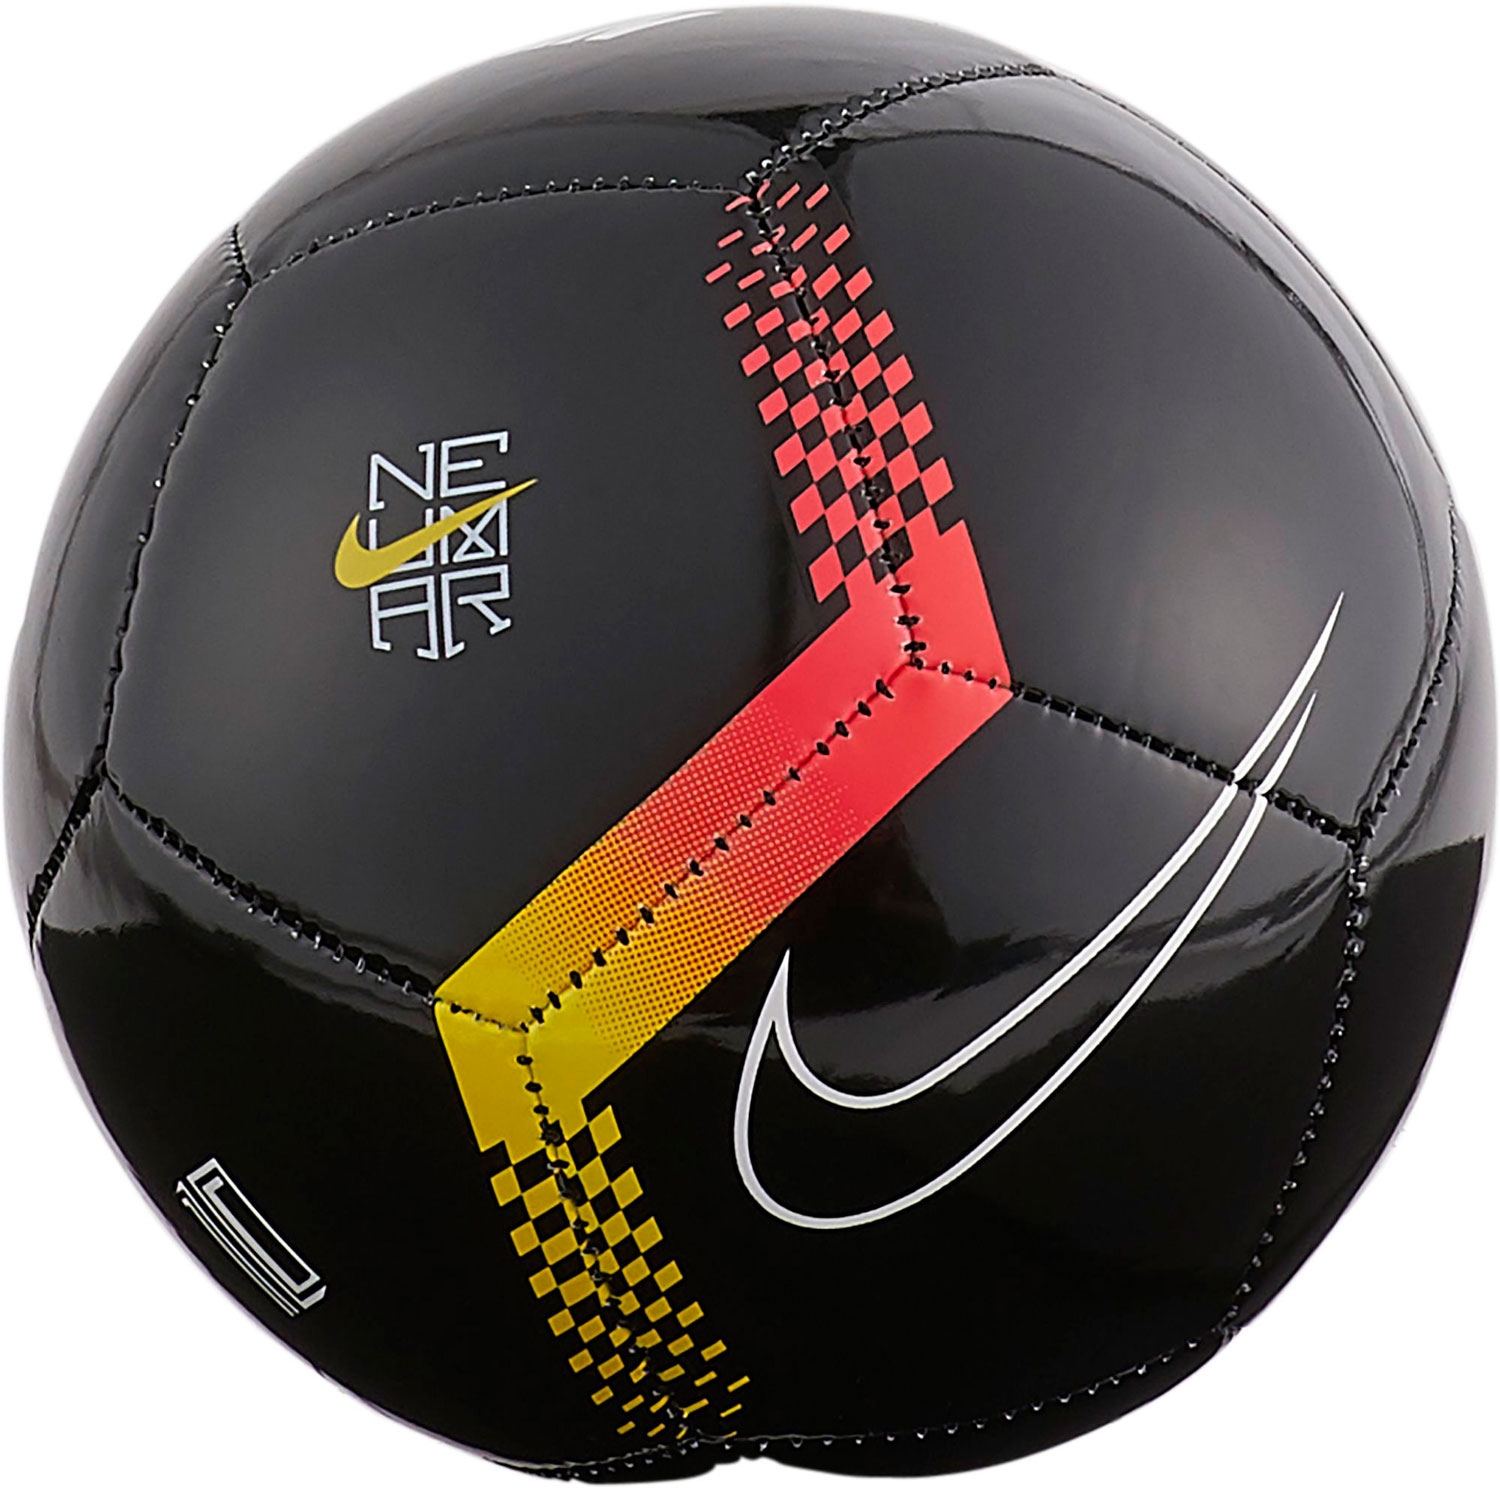 Купить мяч в спортмастере. Мяч Nike Neymar. Мяч Nike 112012. Мяч футбольный Nike Neymar. Мяч найк футбольный оригинал.